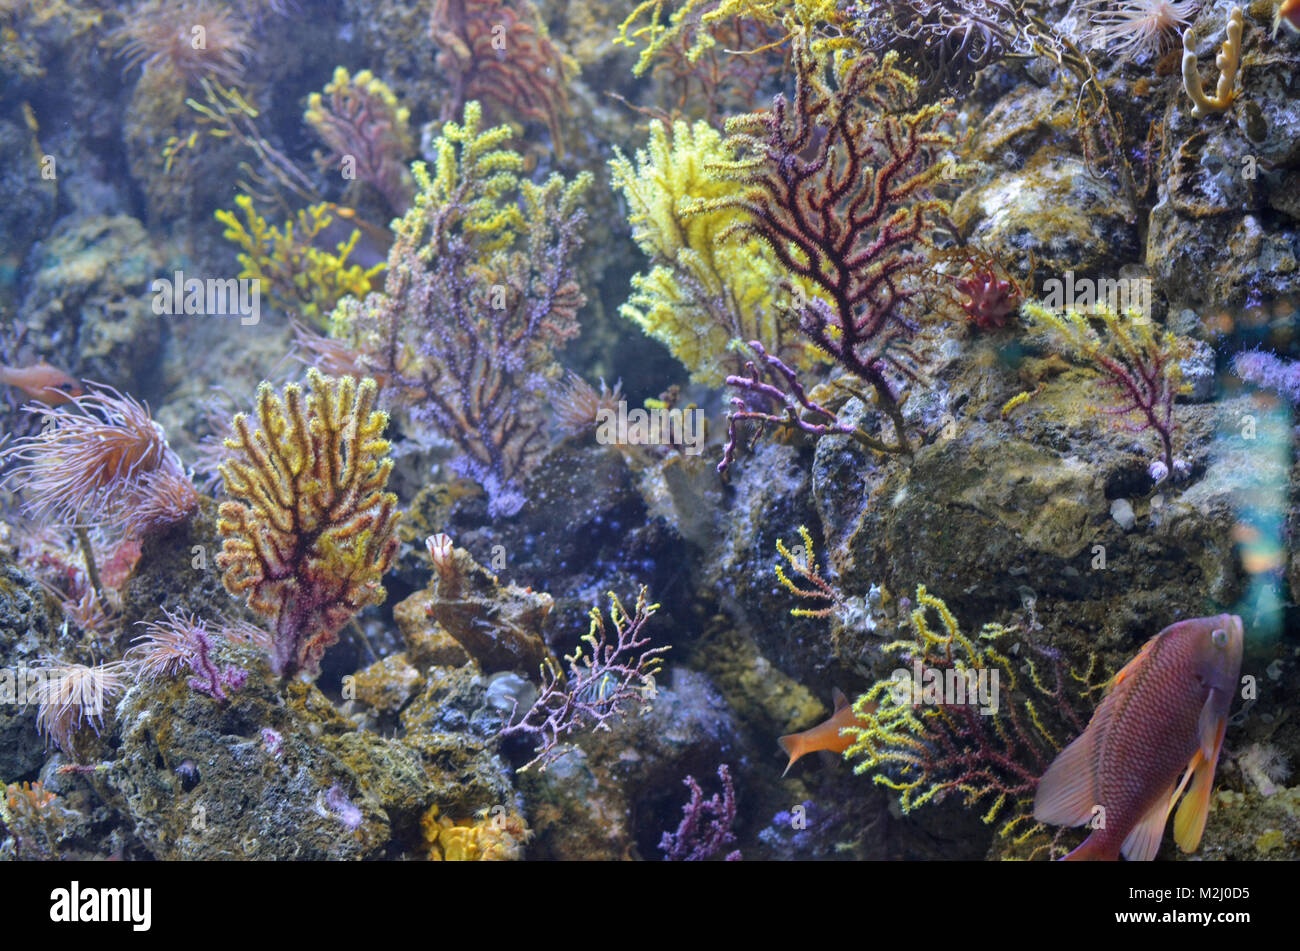 Abstrakte marine backround. Korallen, Algen und Meer exotische Fische. Die Technik der Soft kunst Schwerpunkt liegt in der Tiefe der Wahrnehmung verwendet. Stockfoto